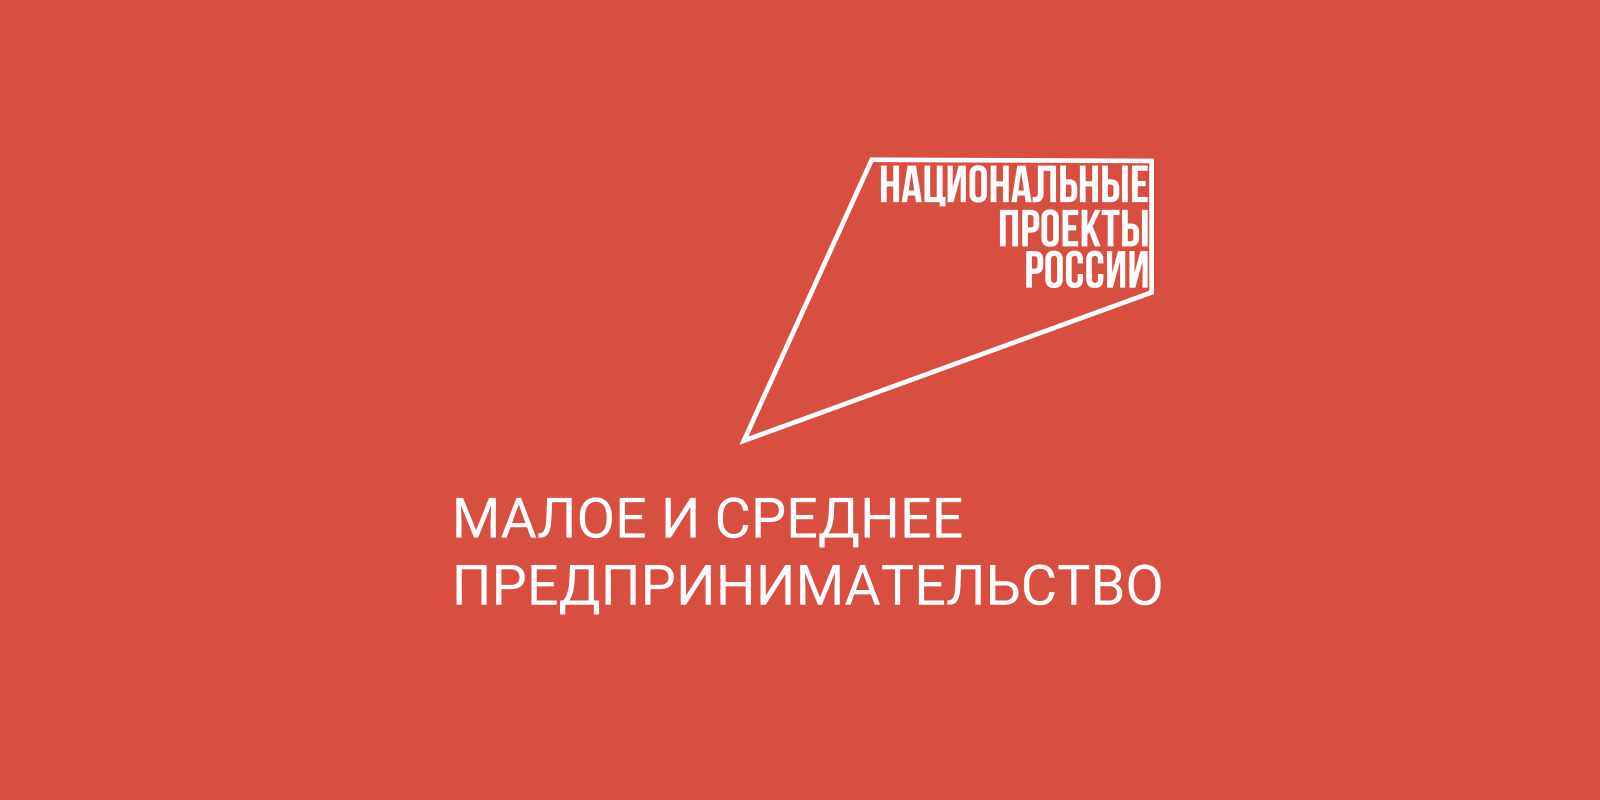 Более 200 предпринимателей Вологодской области разместили бесплатную рекламу о своем бизнесе..